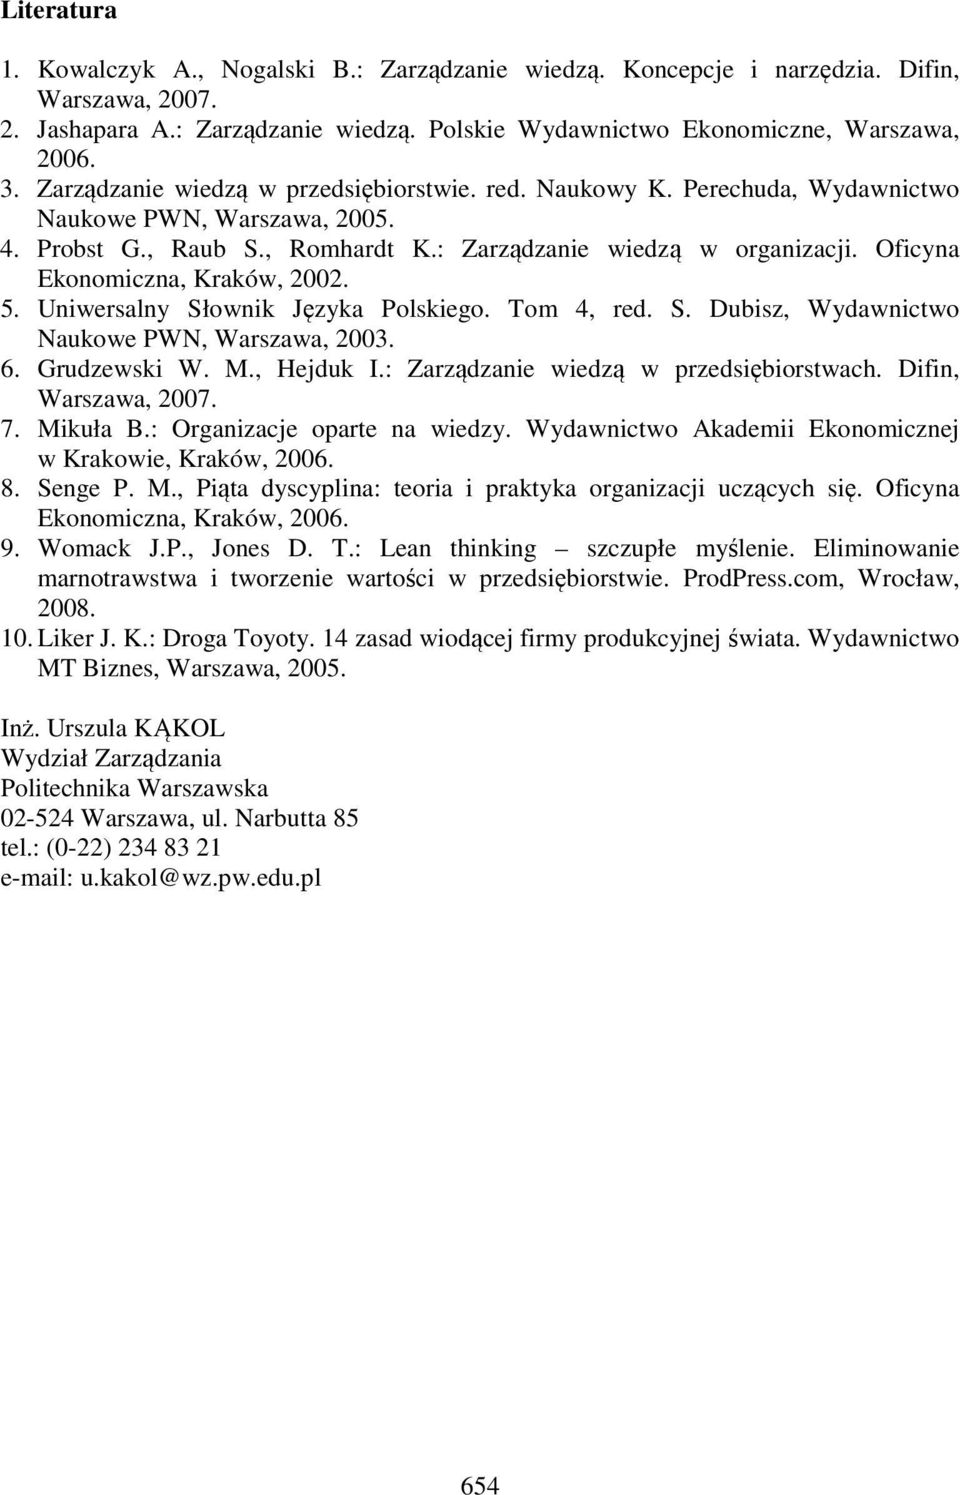 Oficyna Ekonomiczna, Kraków, 2002. 5. Uniwersalny Słownik Języka Polskiego. Tom 4, red. S. Dubisz, Wydawnictwo Naukowe PWN, Warszawa, 2003. 6. Grudzewski W. M., Hejduk I.